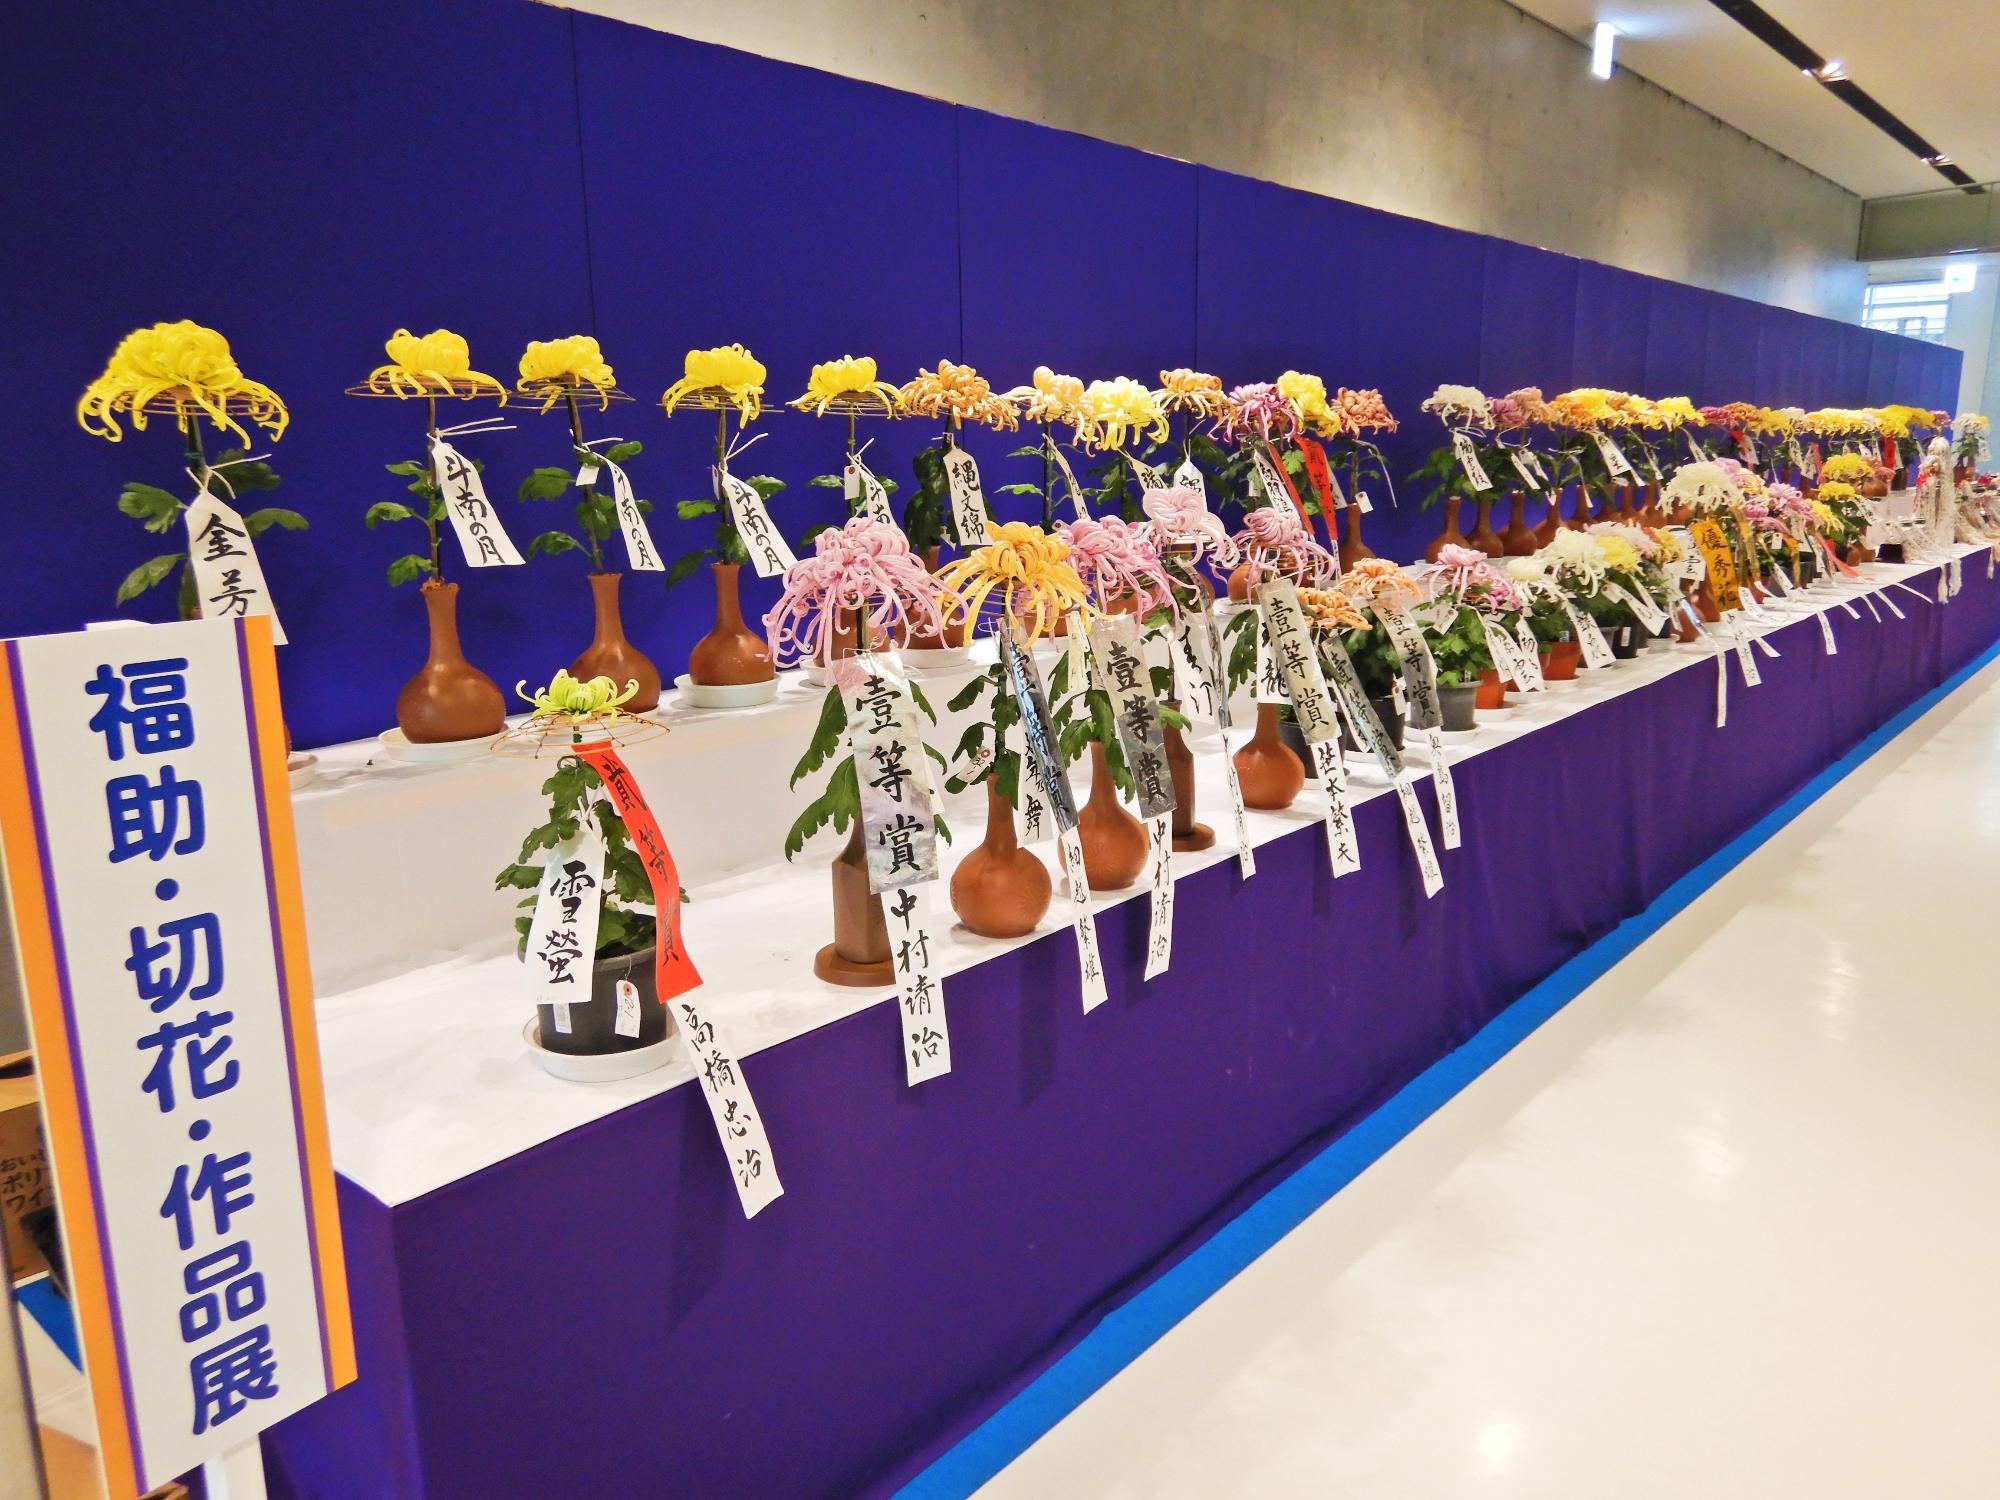 1輪ずつ花器にいけてずらりと展示されている色とりどりの切り花展の写真